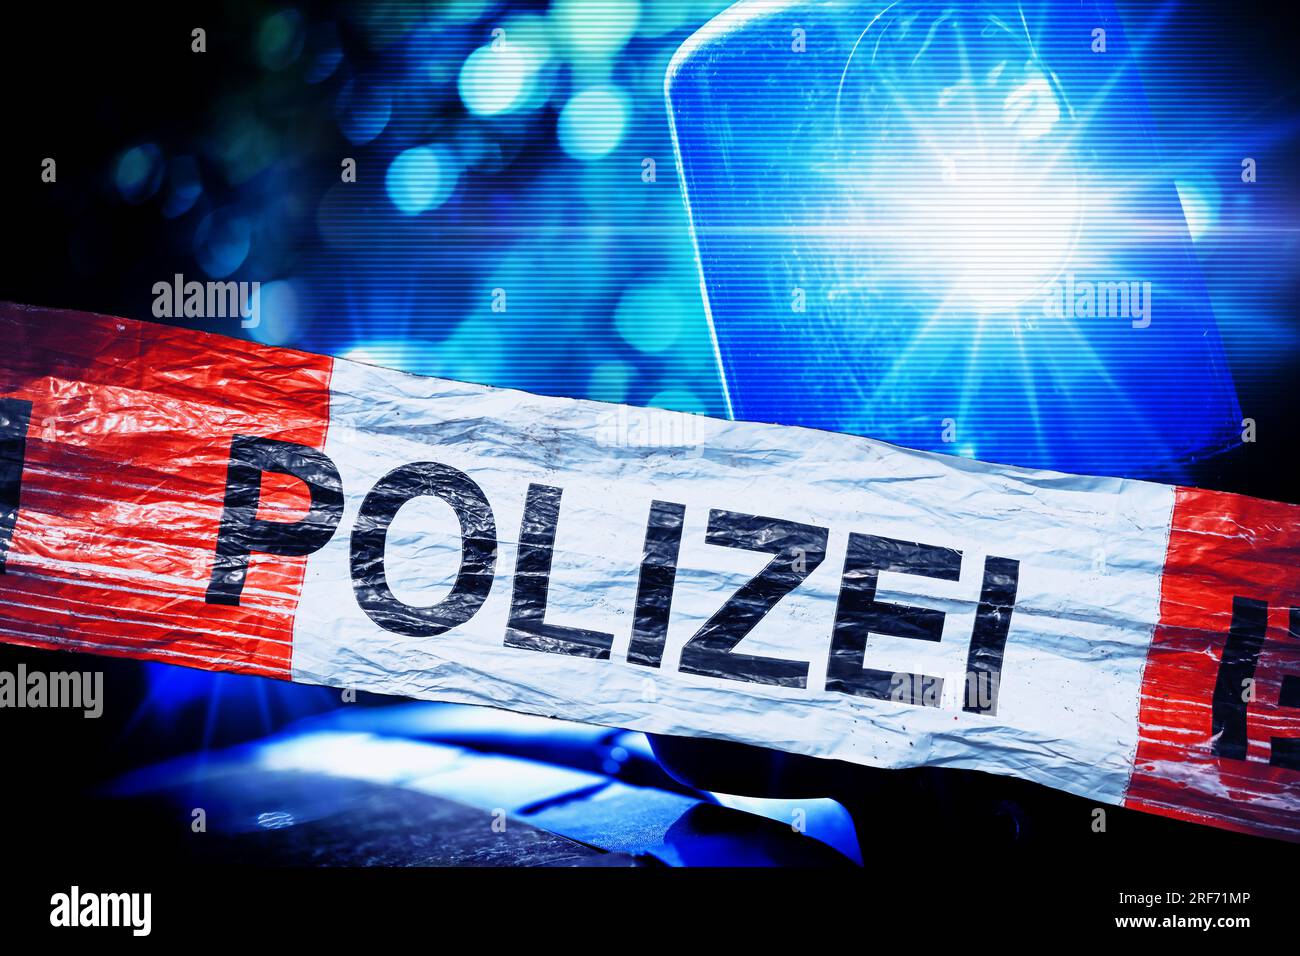 FOTOMONTAGE, Polizei-Absperrband und Blaulicht, Symbolfoto Polizeieinsatz Stock Photo